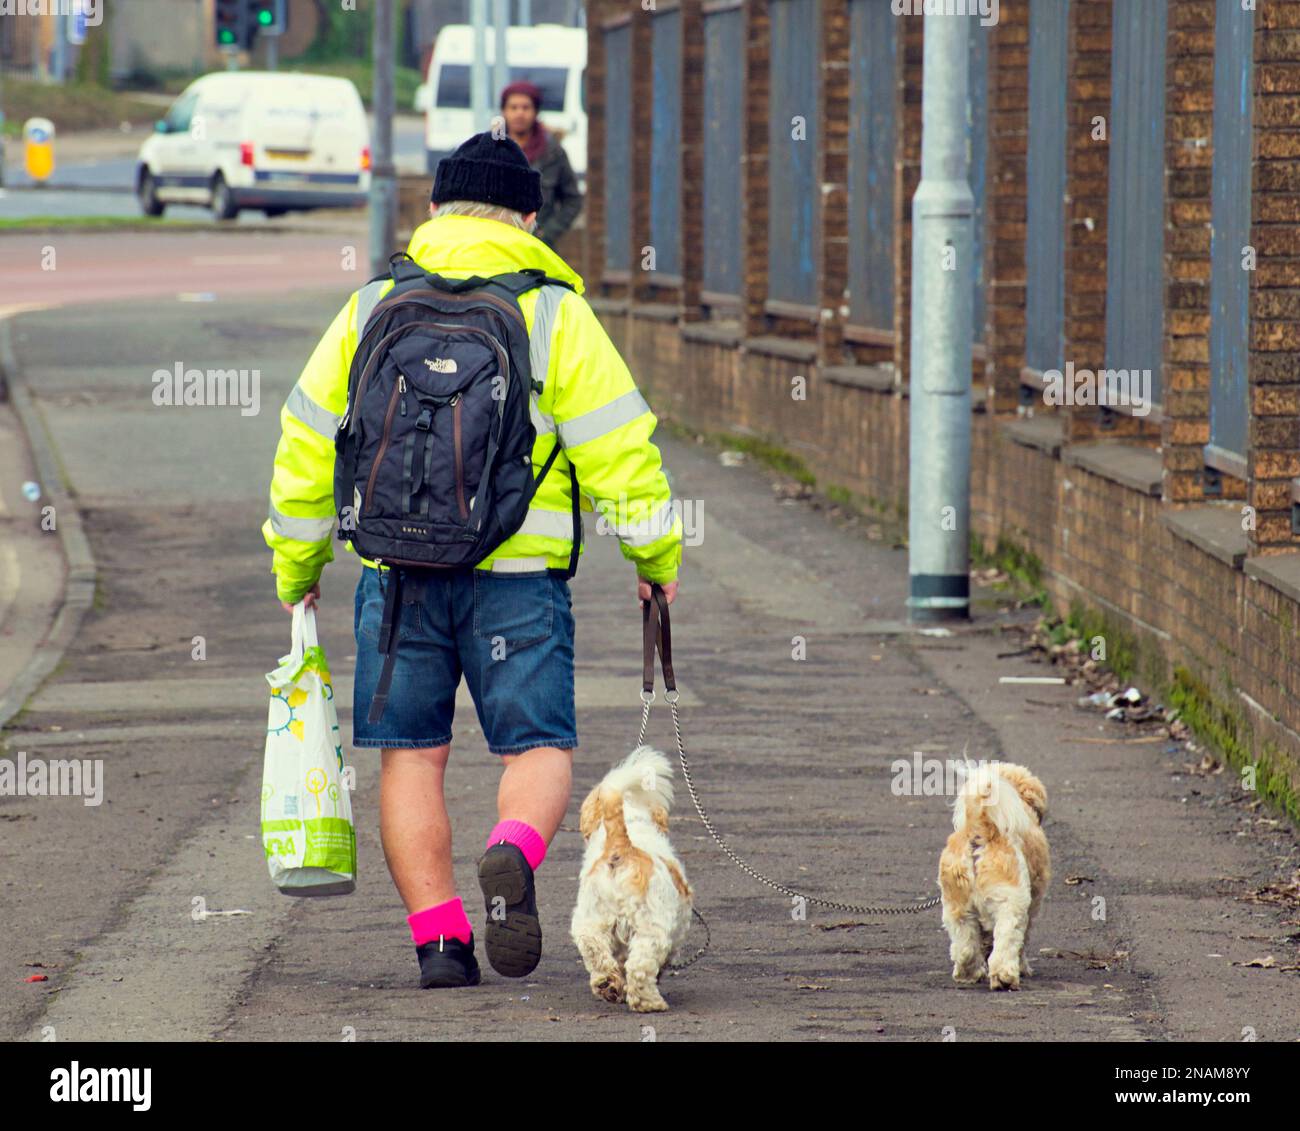 Homme en short avec sac de shopping marchant deux petits chiens pm le trottoir Banque D'Images